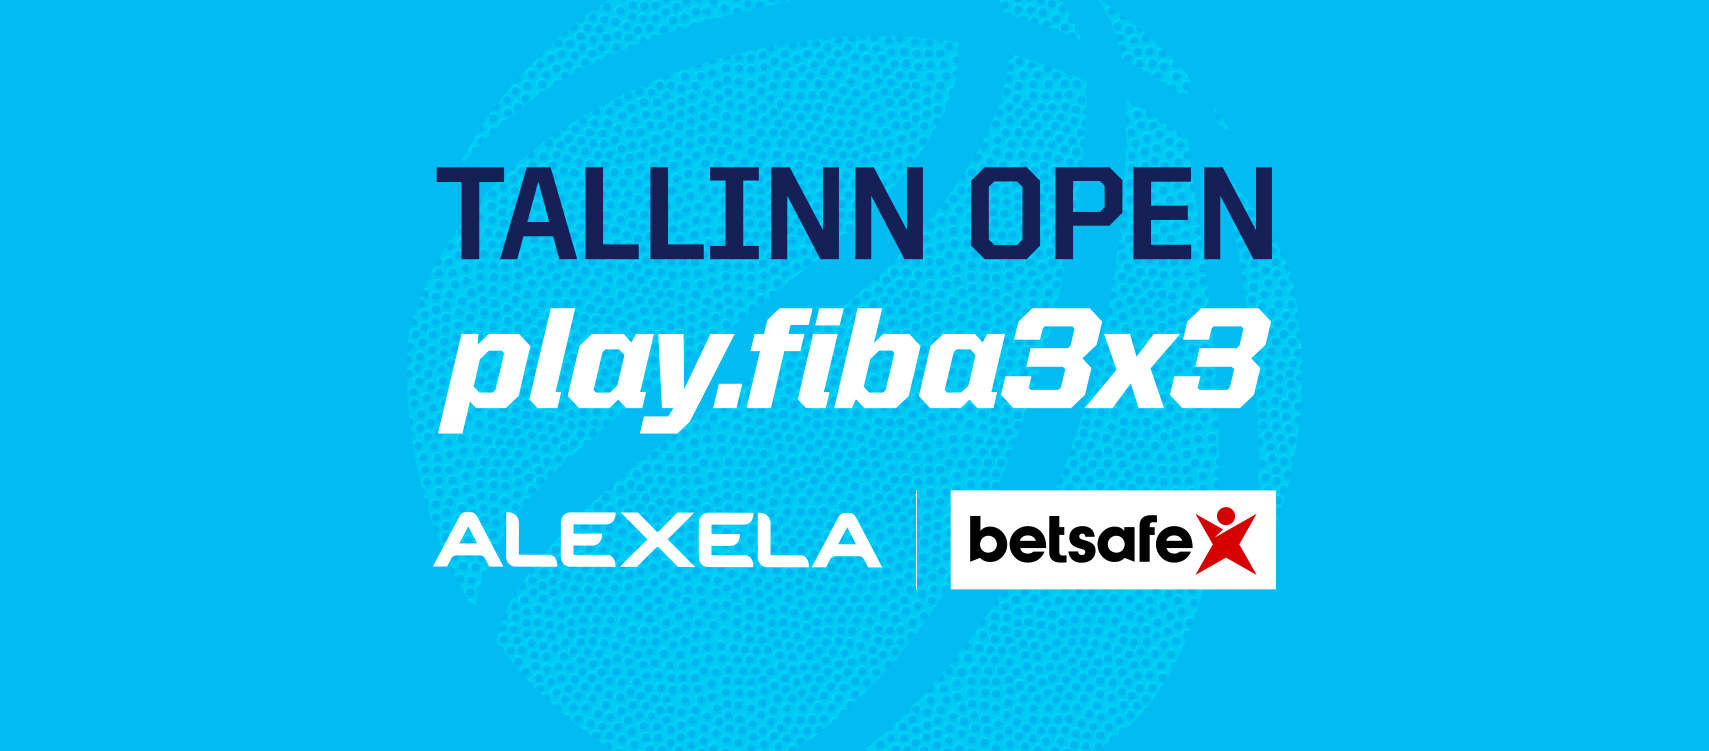 Alexela 3x3 Tallinn Open 2023